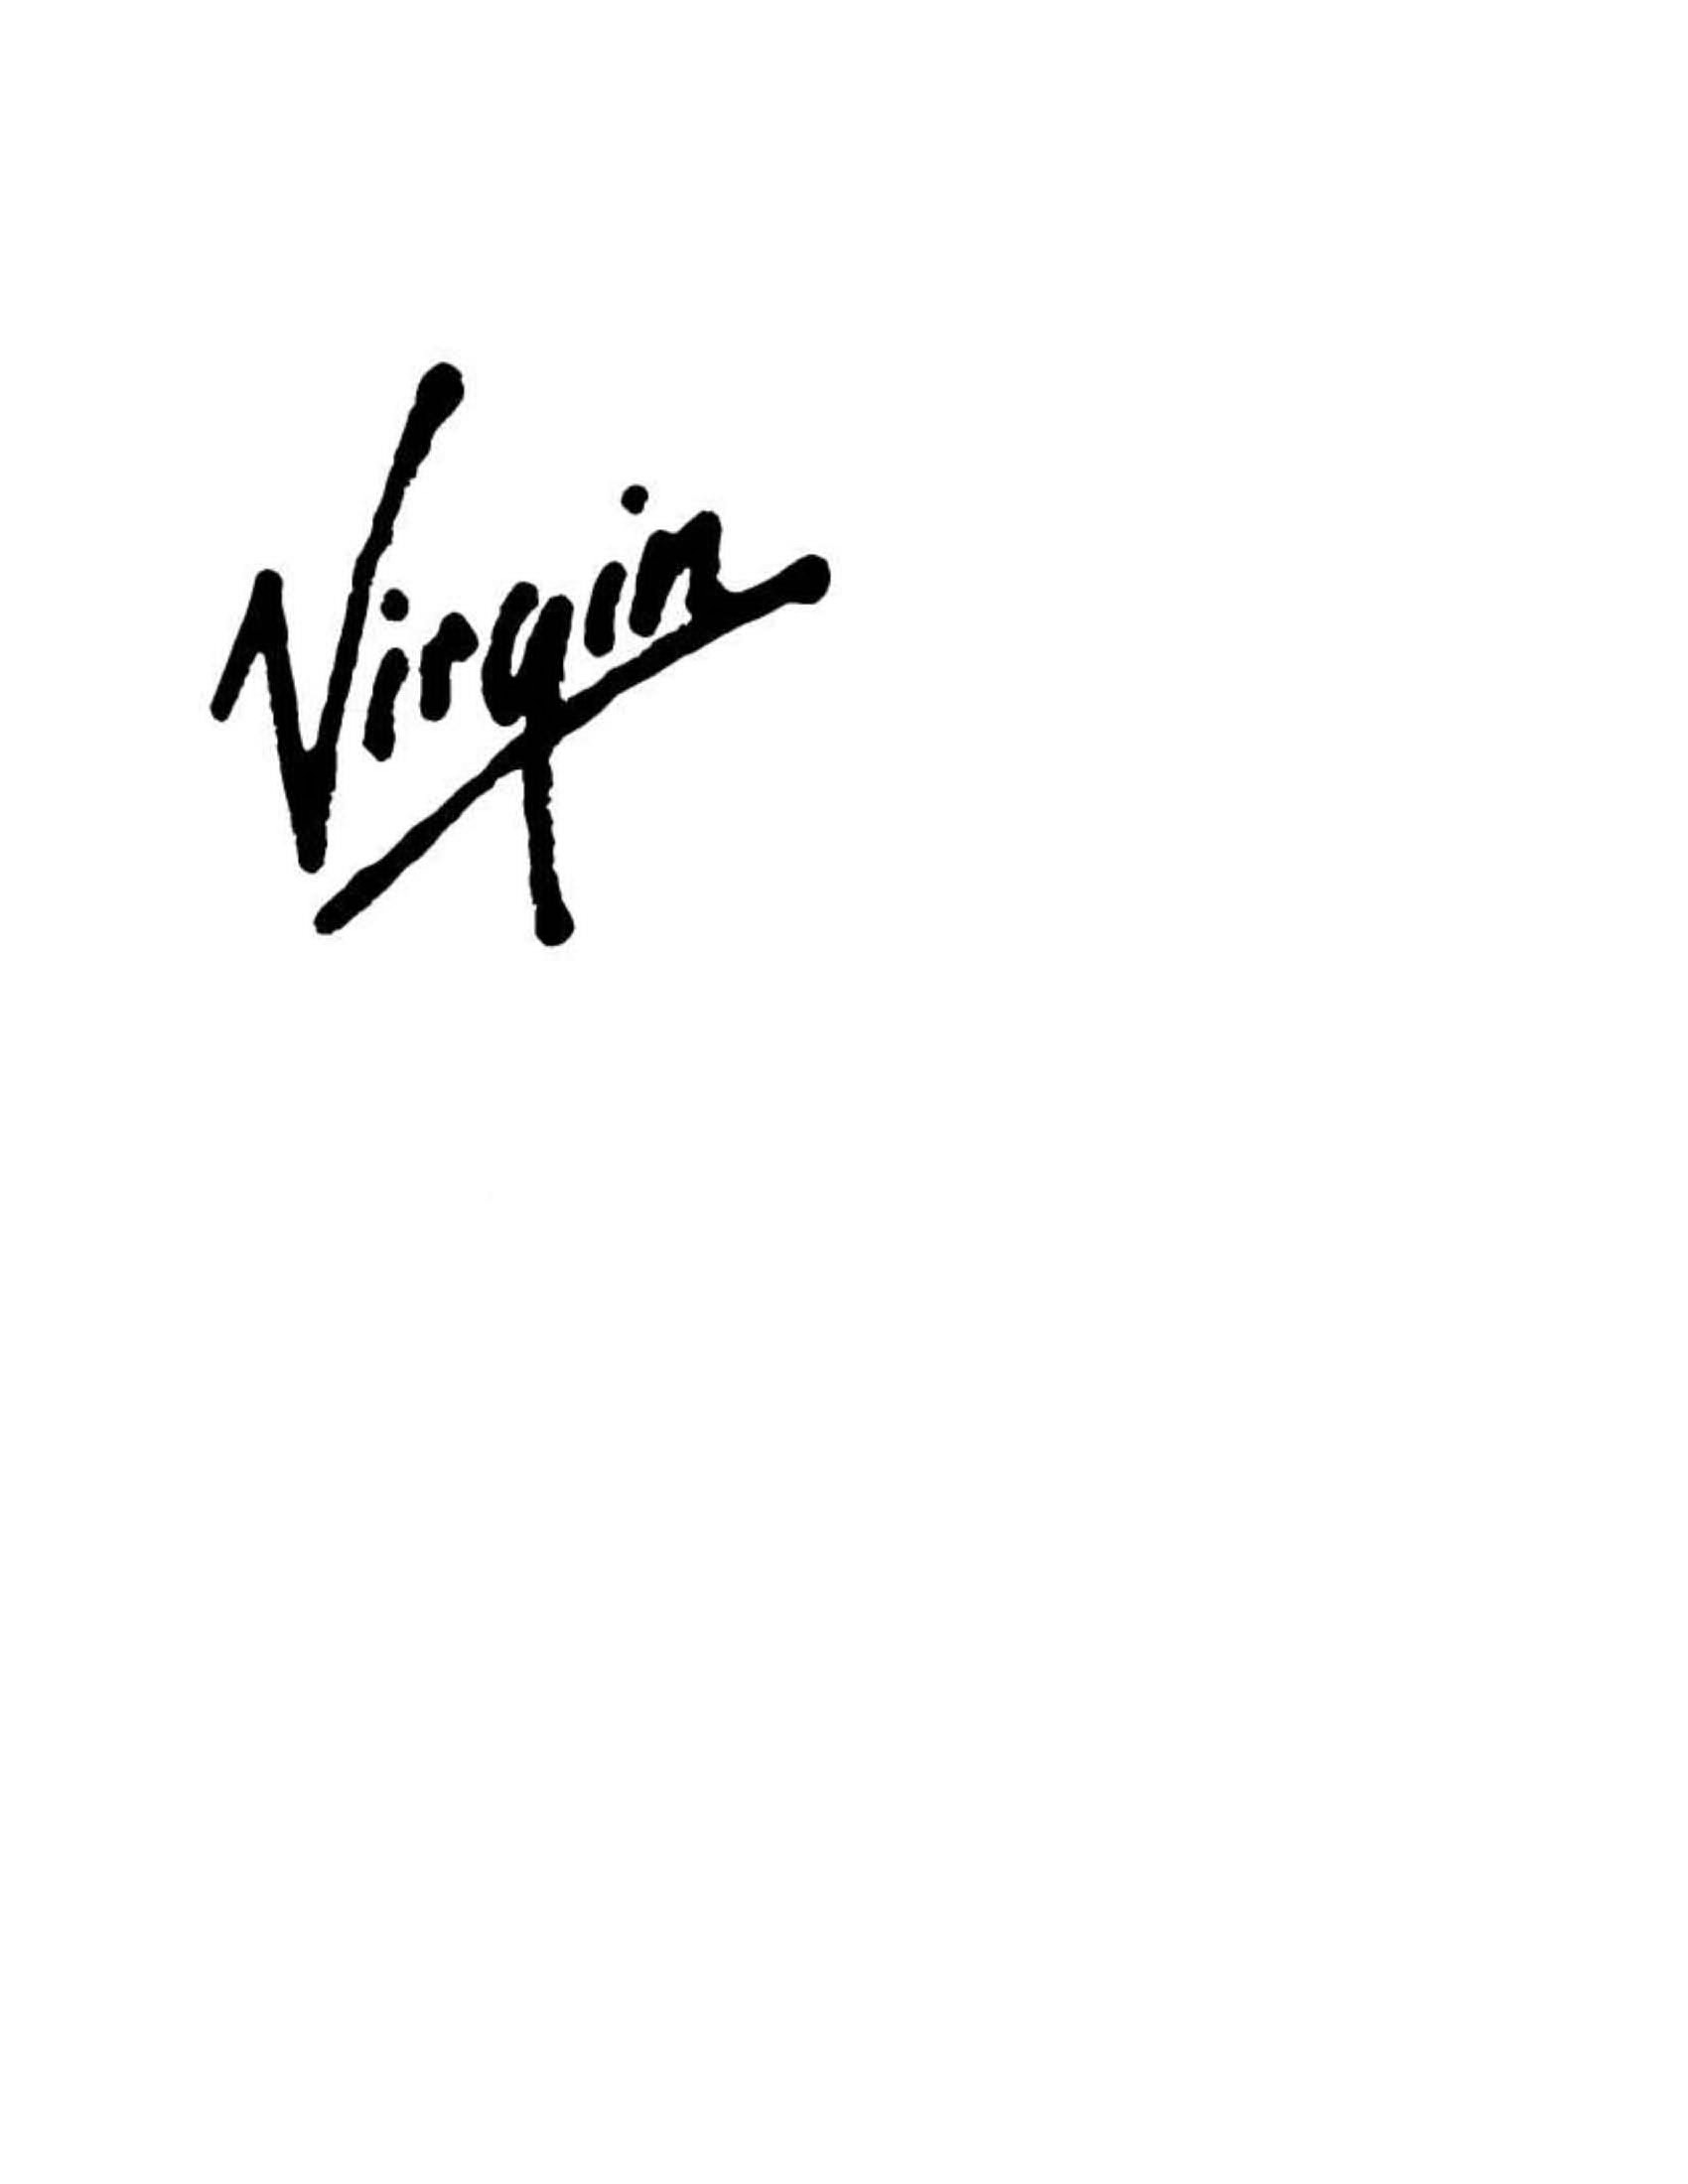 VIRGIN